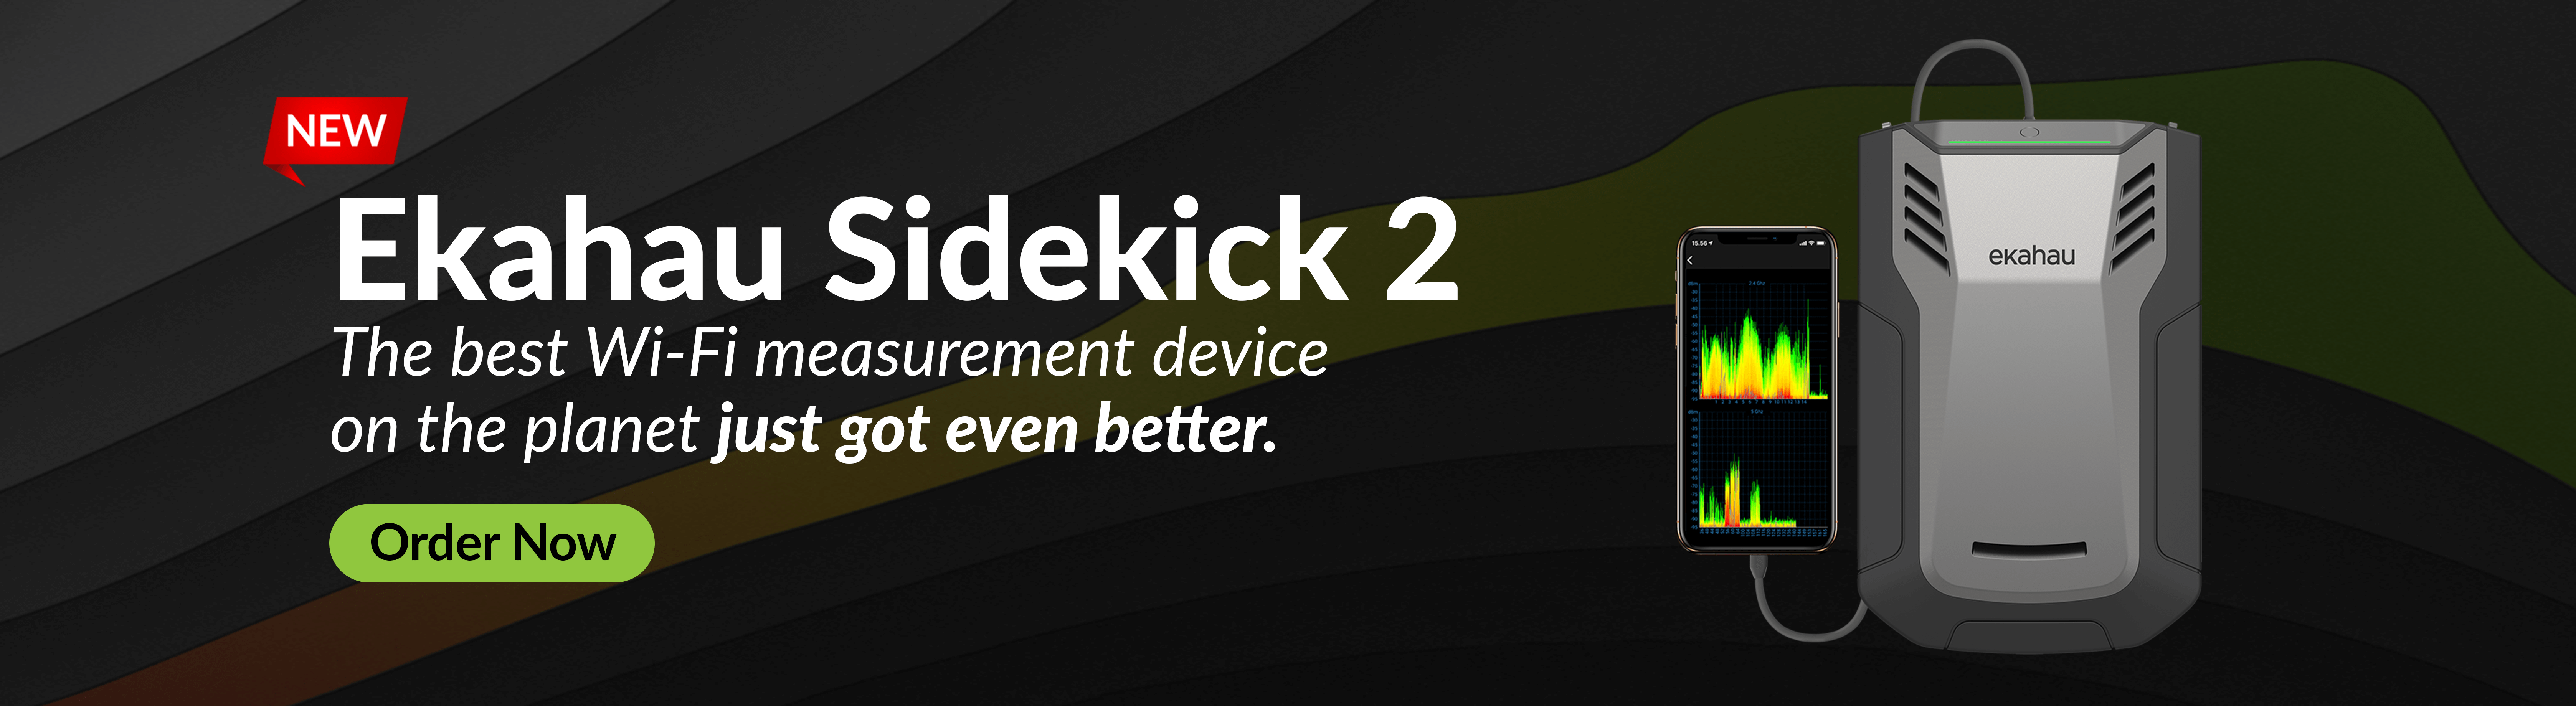 Sidekick-2 Blog Banner